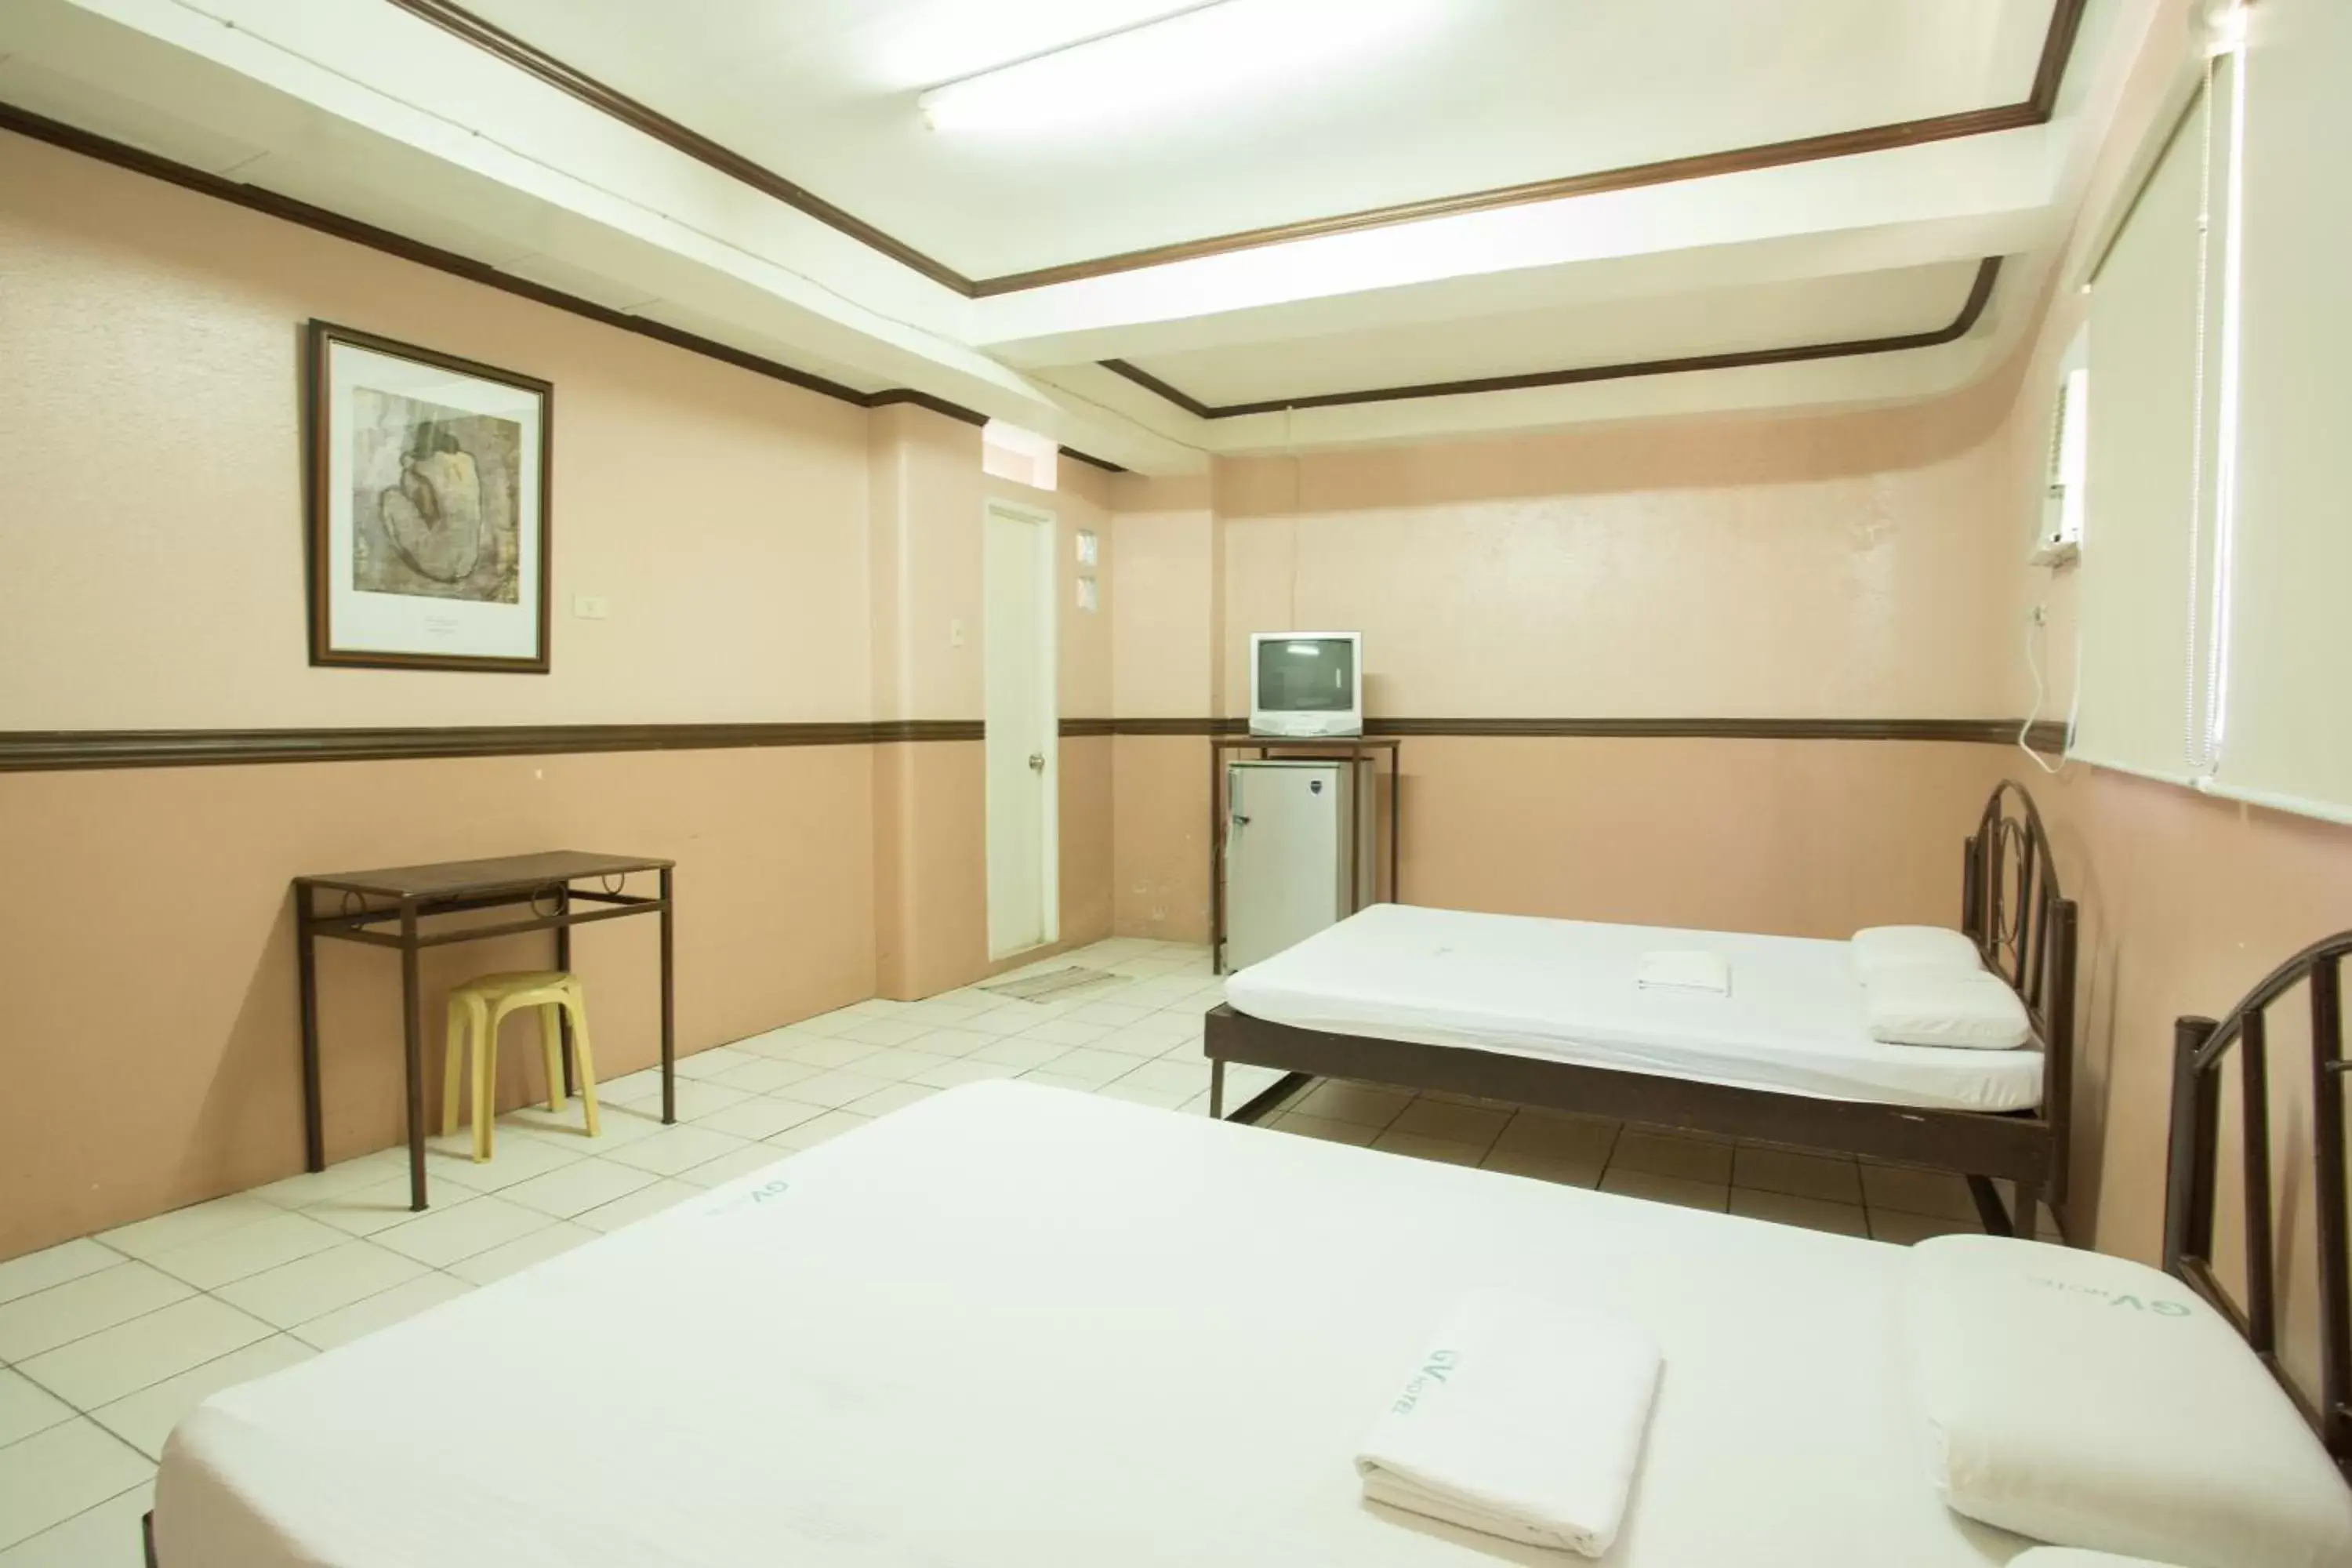 Room Photo in GV Hotel - Masbate